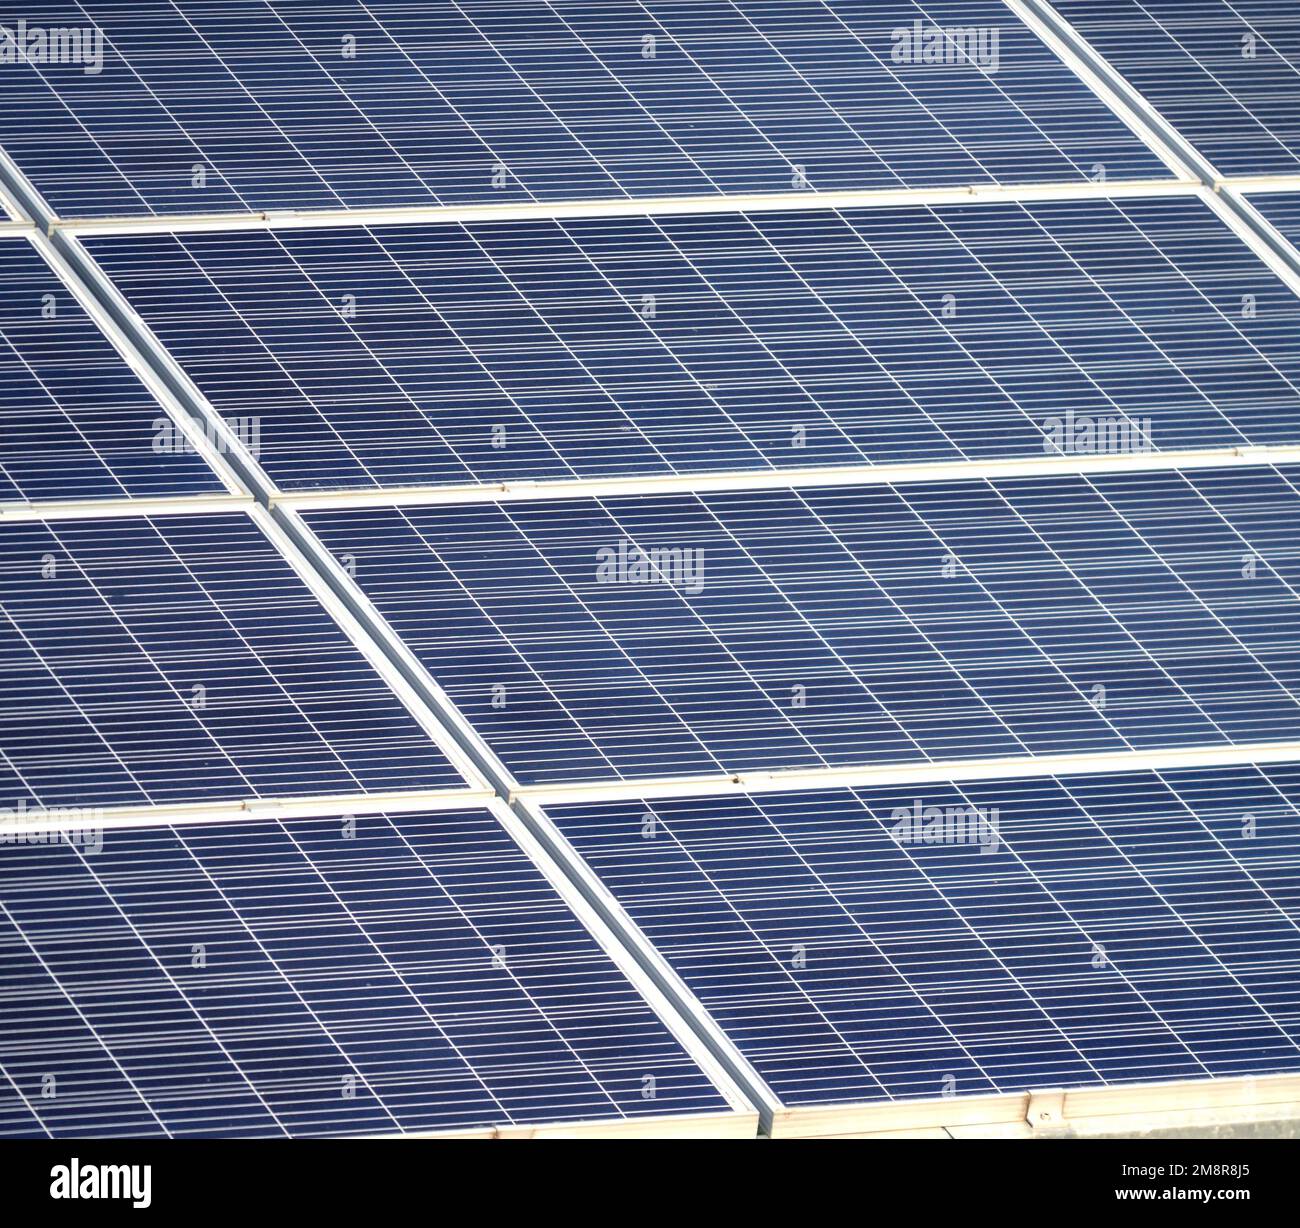 Grands panneaux solaires centrales solaires. Énergie verte. Production d'énergie solaire. Production d'électricité solaire. Énergies renouvelables. Panneaux photovoltaïques bleus. Production d'électricité écologique Banque D'Images